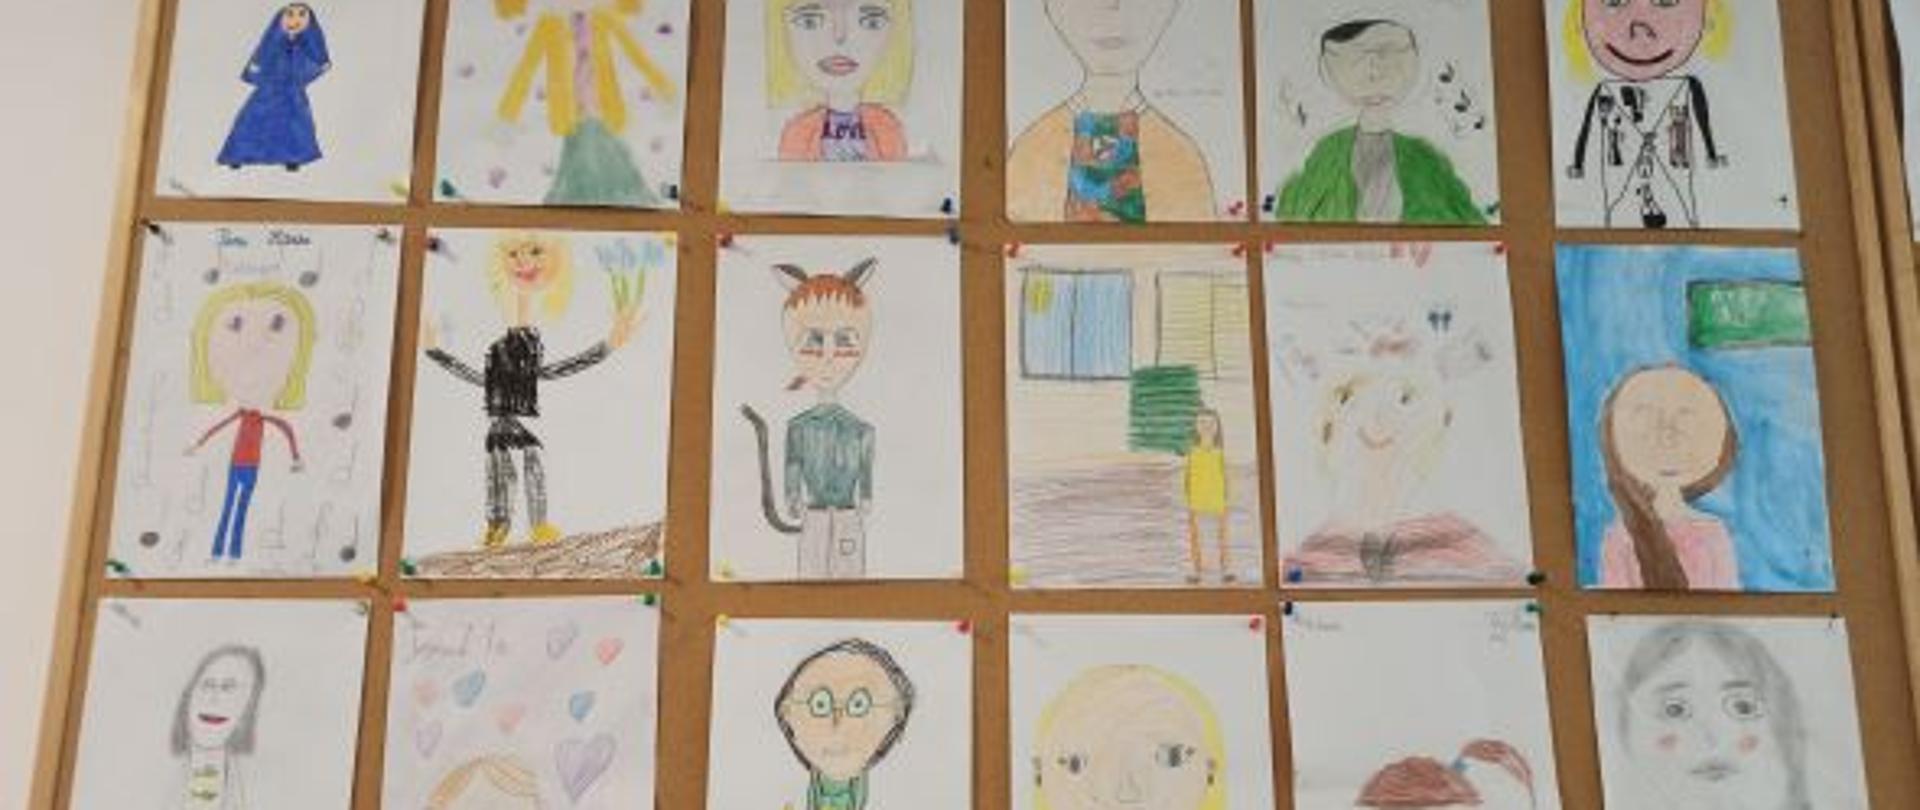 Zdjęcie 18 kolorowych prac uczniów przedstawiających nauczycieli. Obrazki wykonane są kredkami, flamastrami lub farbkami.